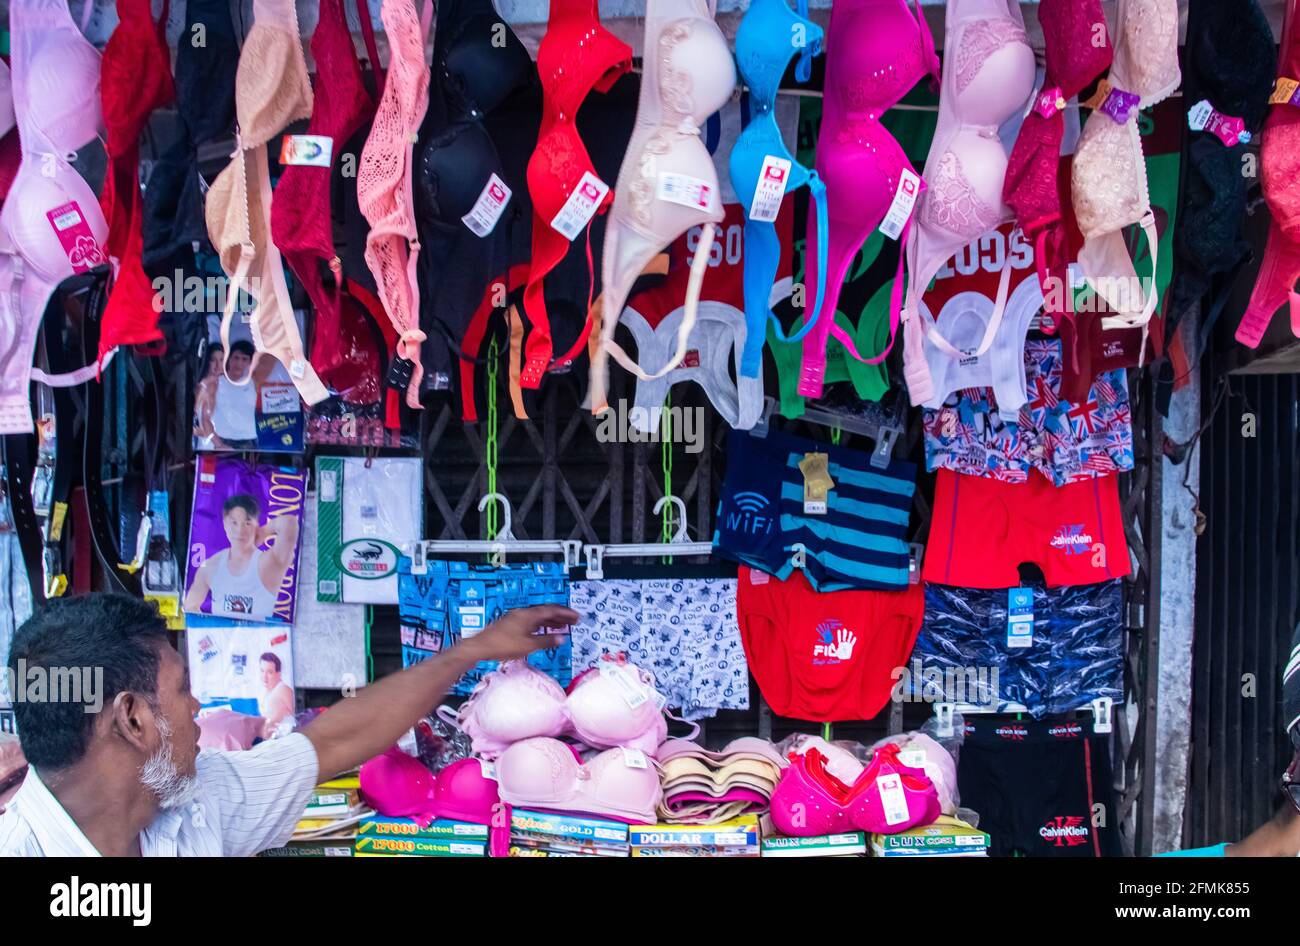 Tienda de Bra en el mercado, capturé esta imagen Chak Bazar, Dhaka, Bangladesh, Asia Foto de stock